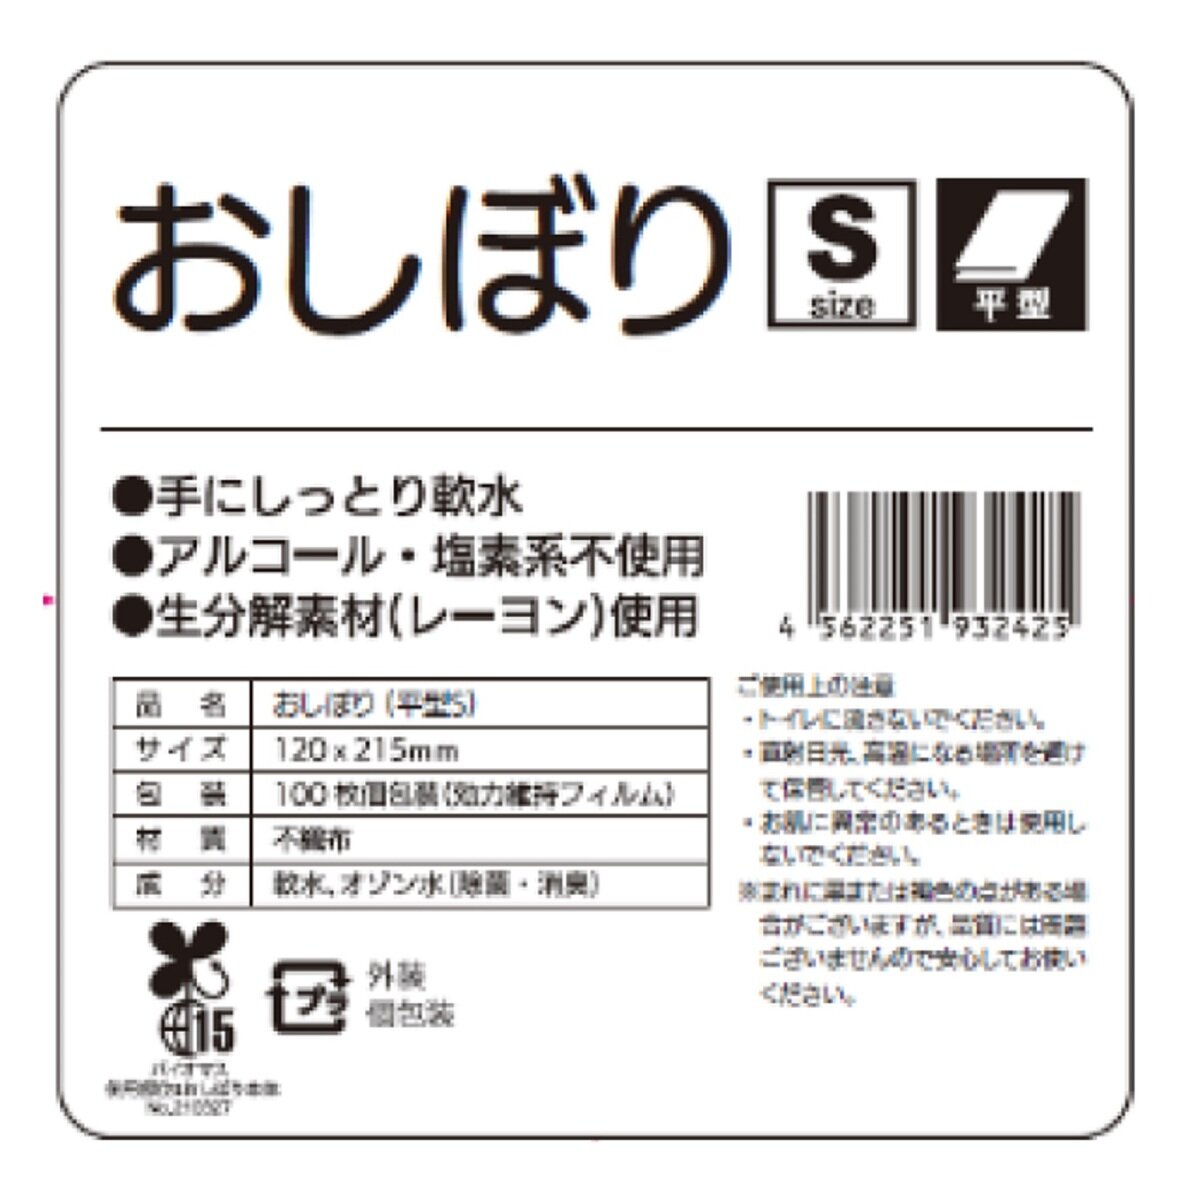 平型おしぼり テフキー Sサイズ 100枚入り x 48袋 バイオマスマーク認定 Costco Japan